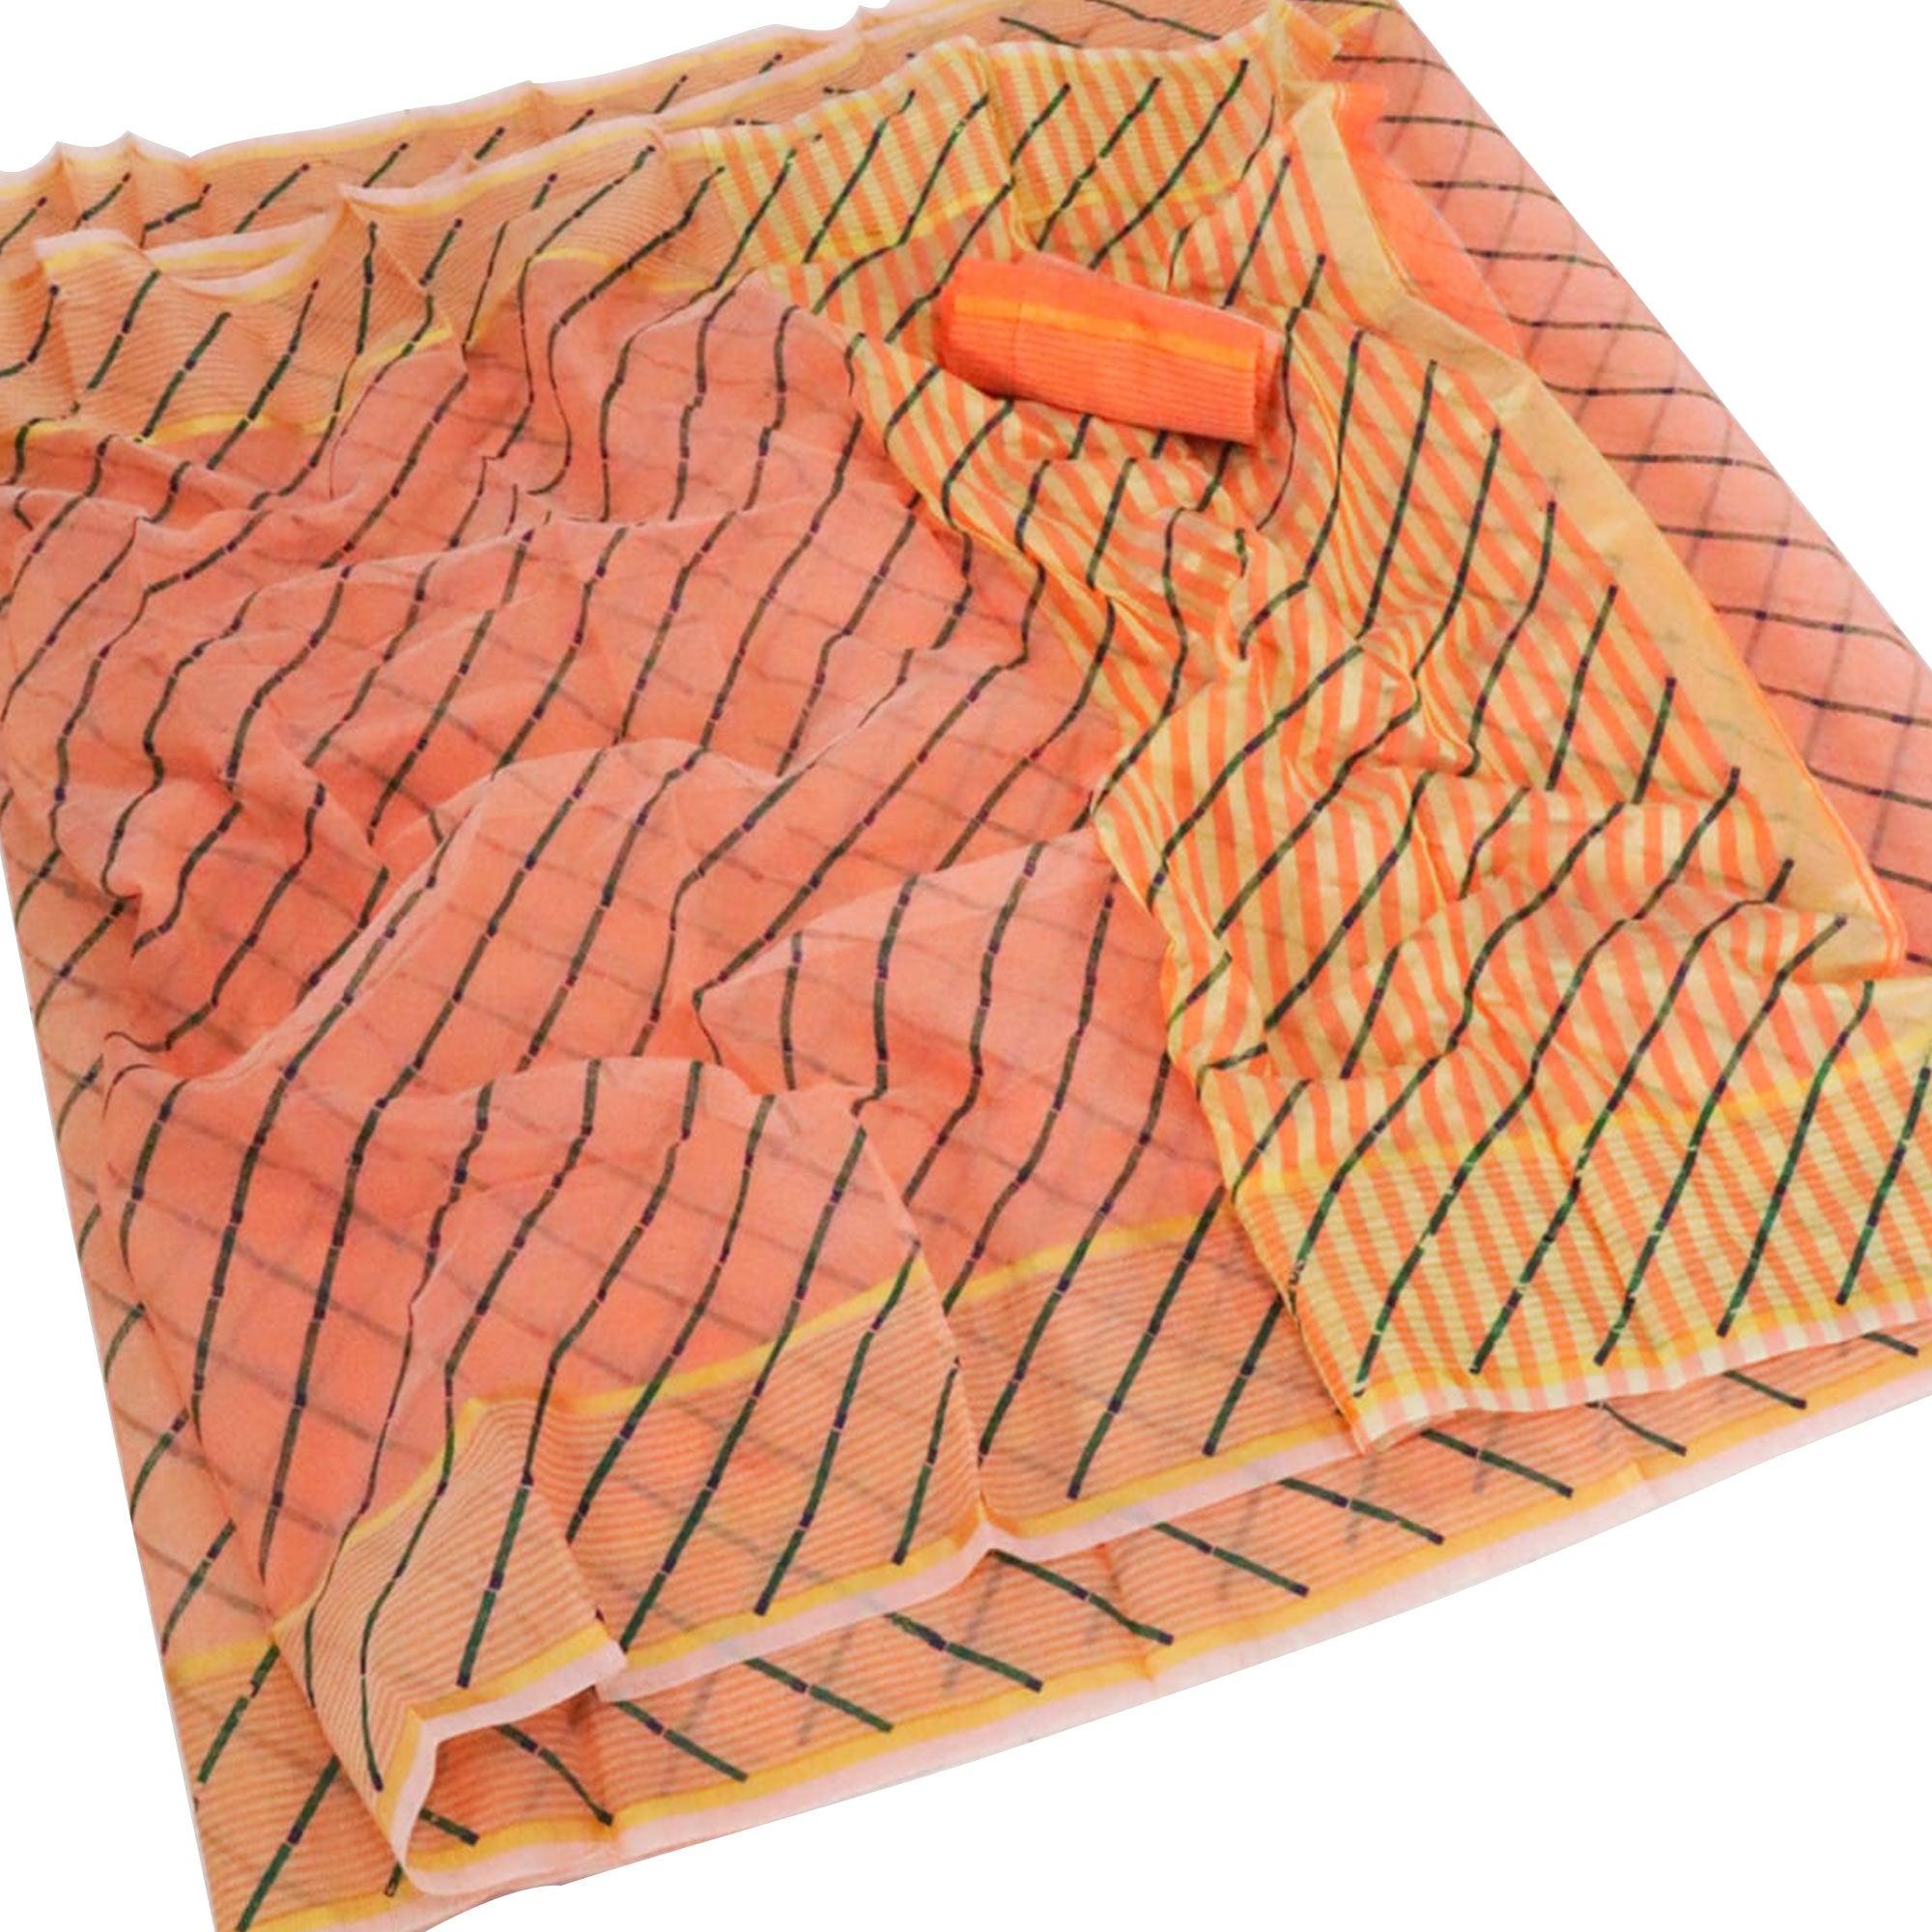 Unique Orange Colored Casual Wear Stripe Printed Kota Doria Cotton Saree With Tassels - Peachmode